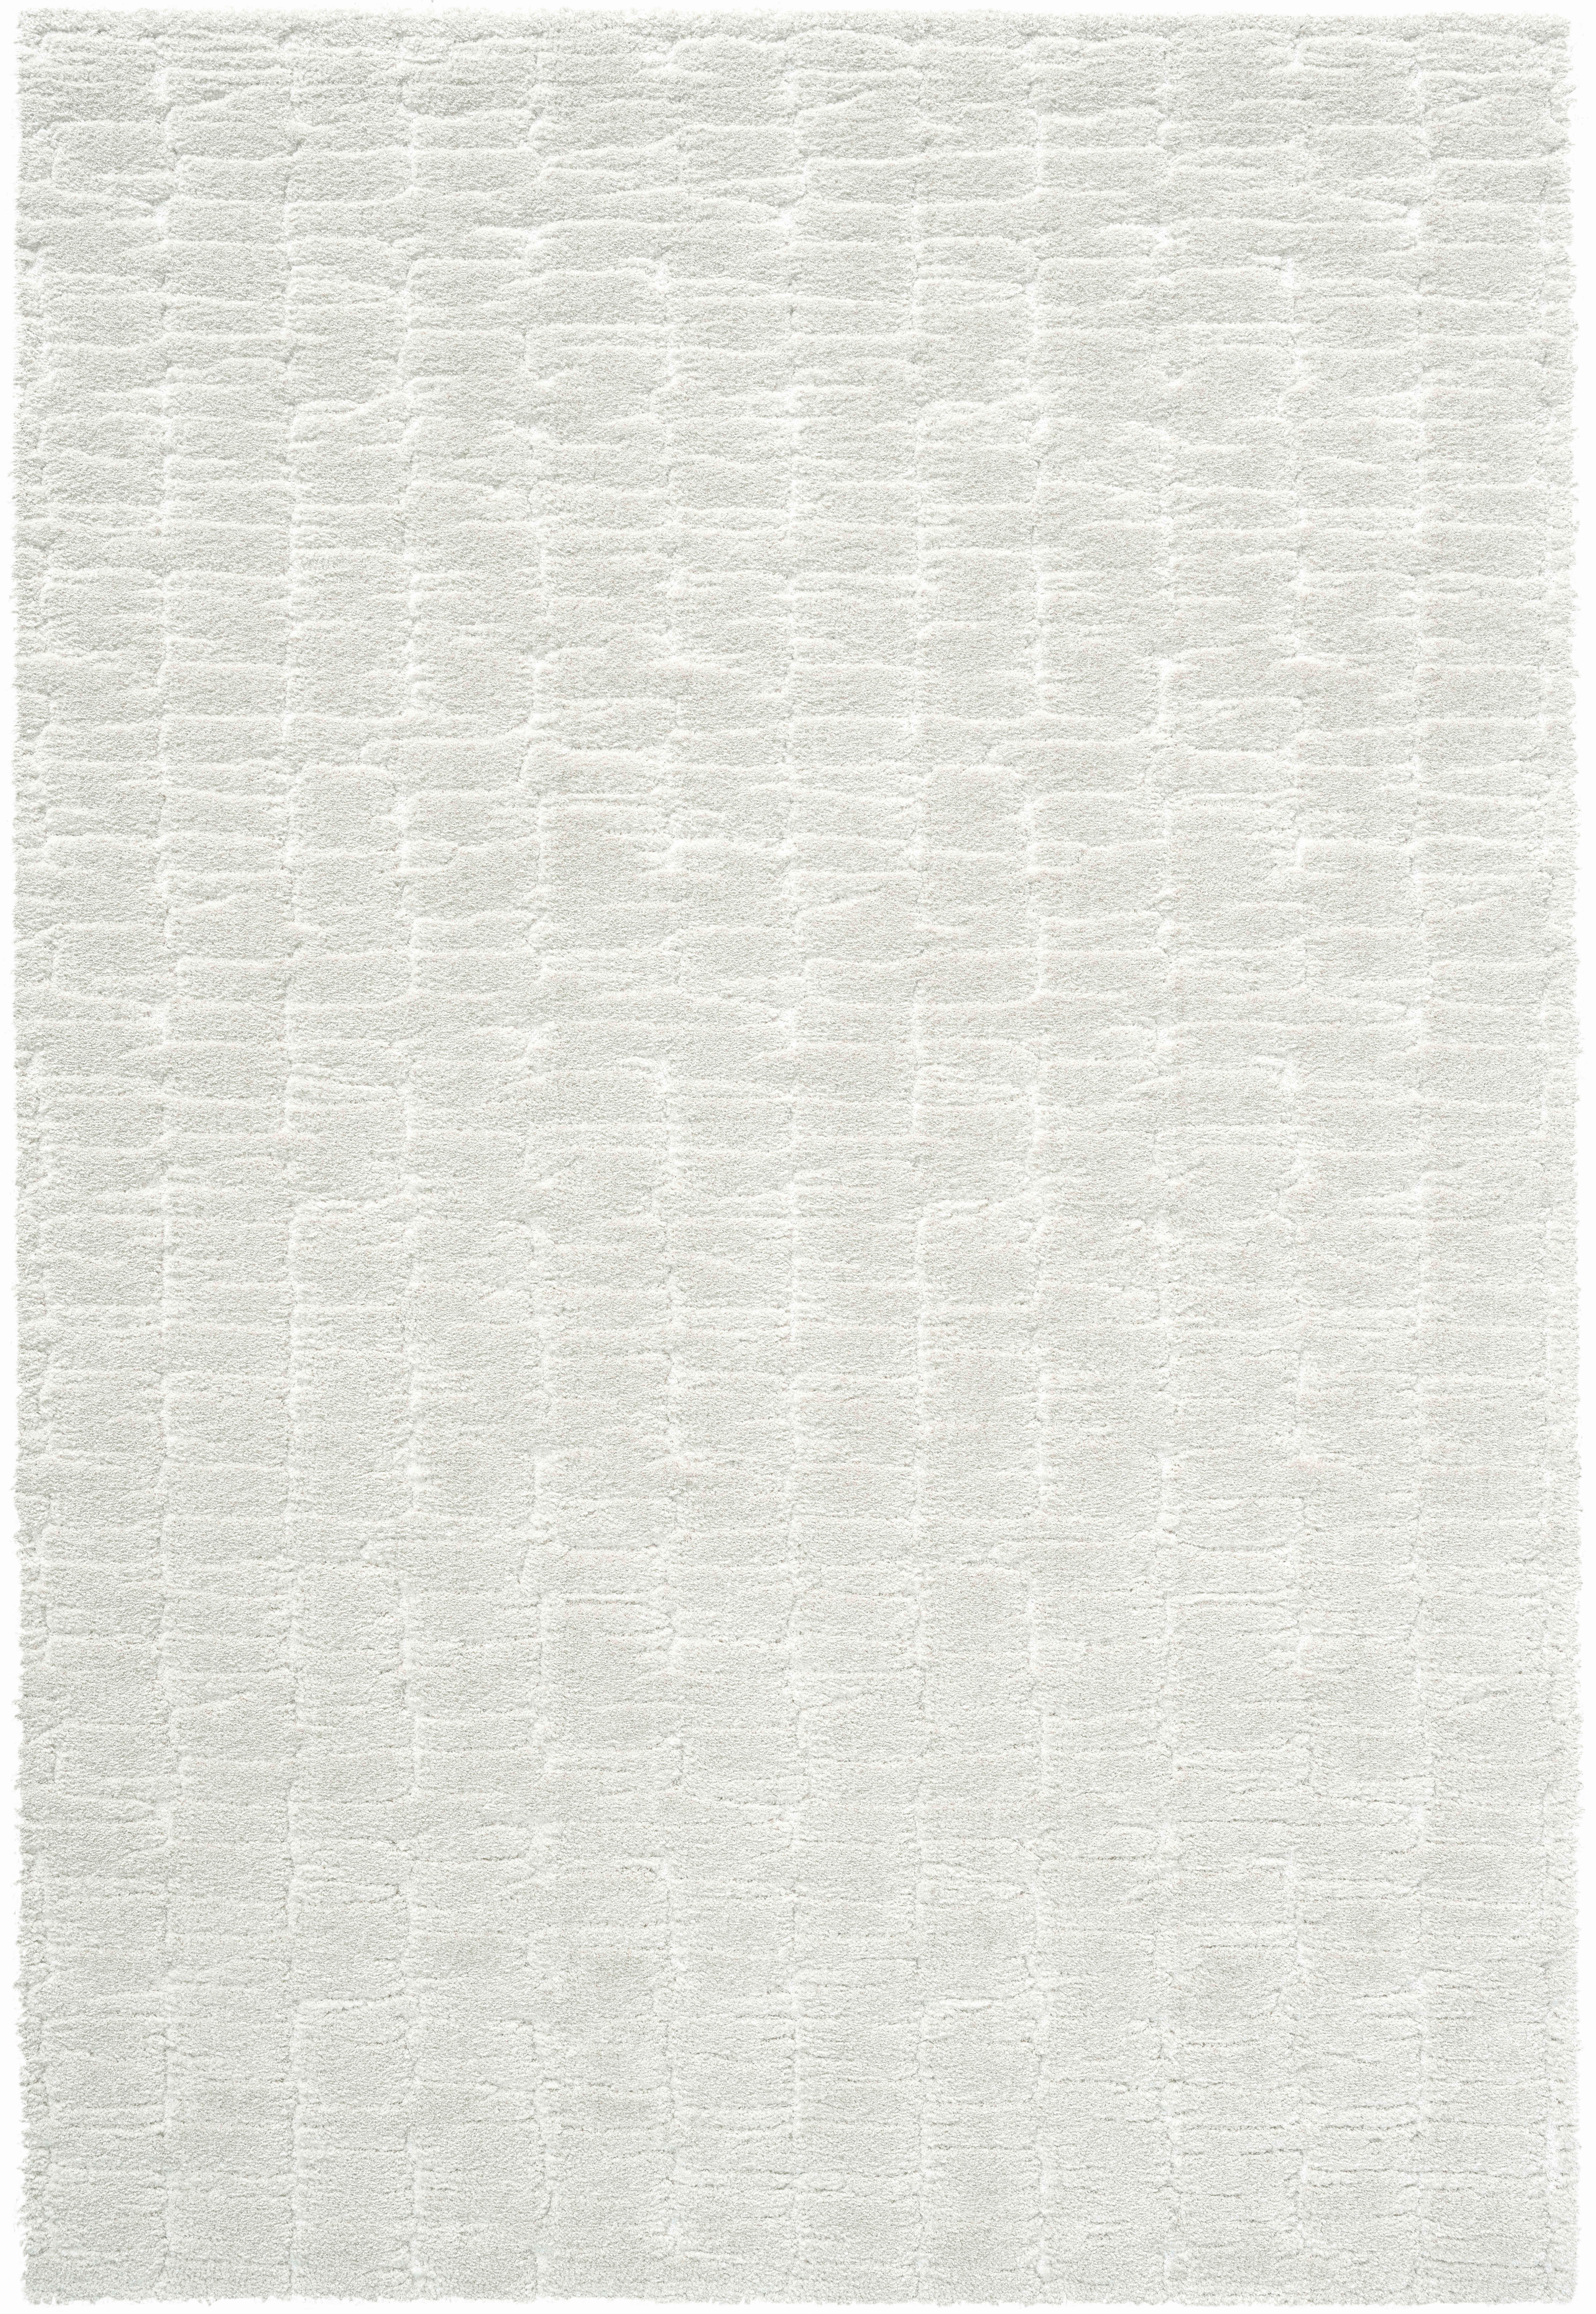 WEBTEPPICH 133/195 cm Masai  - Creme/Weiß, KONVENTIONELL, Kunststoff/Textil (133/195cm) - Novel